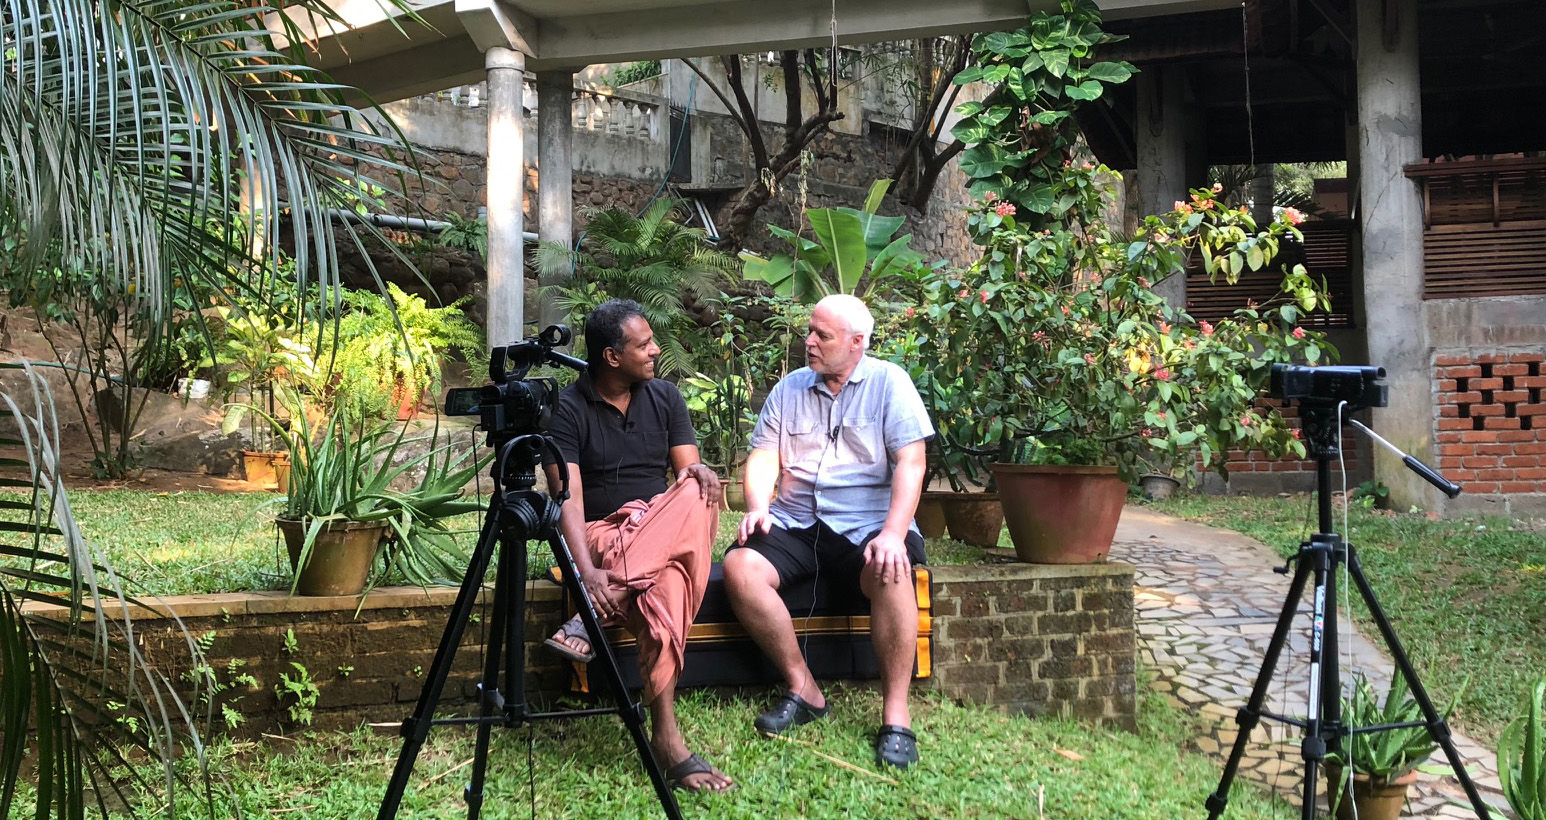 Dr Unnikrishnan Kavirajan intervjuas av Börje Peratt i januari 2018, Kerala, Indien - Foto: Lars af Sillén